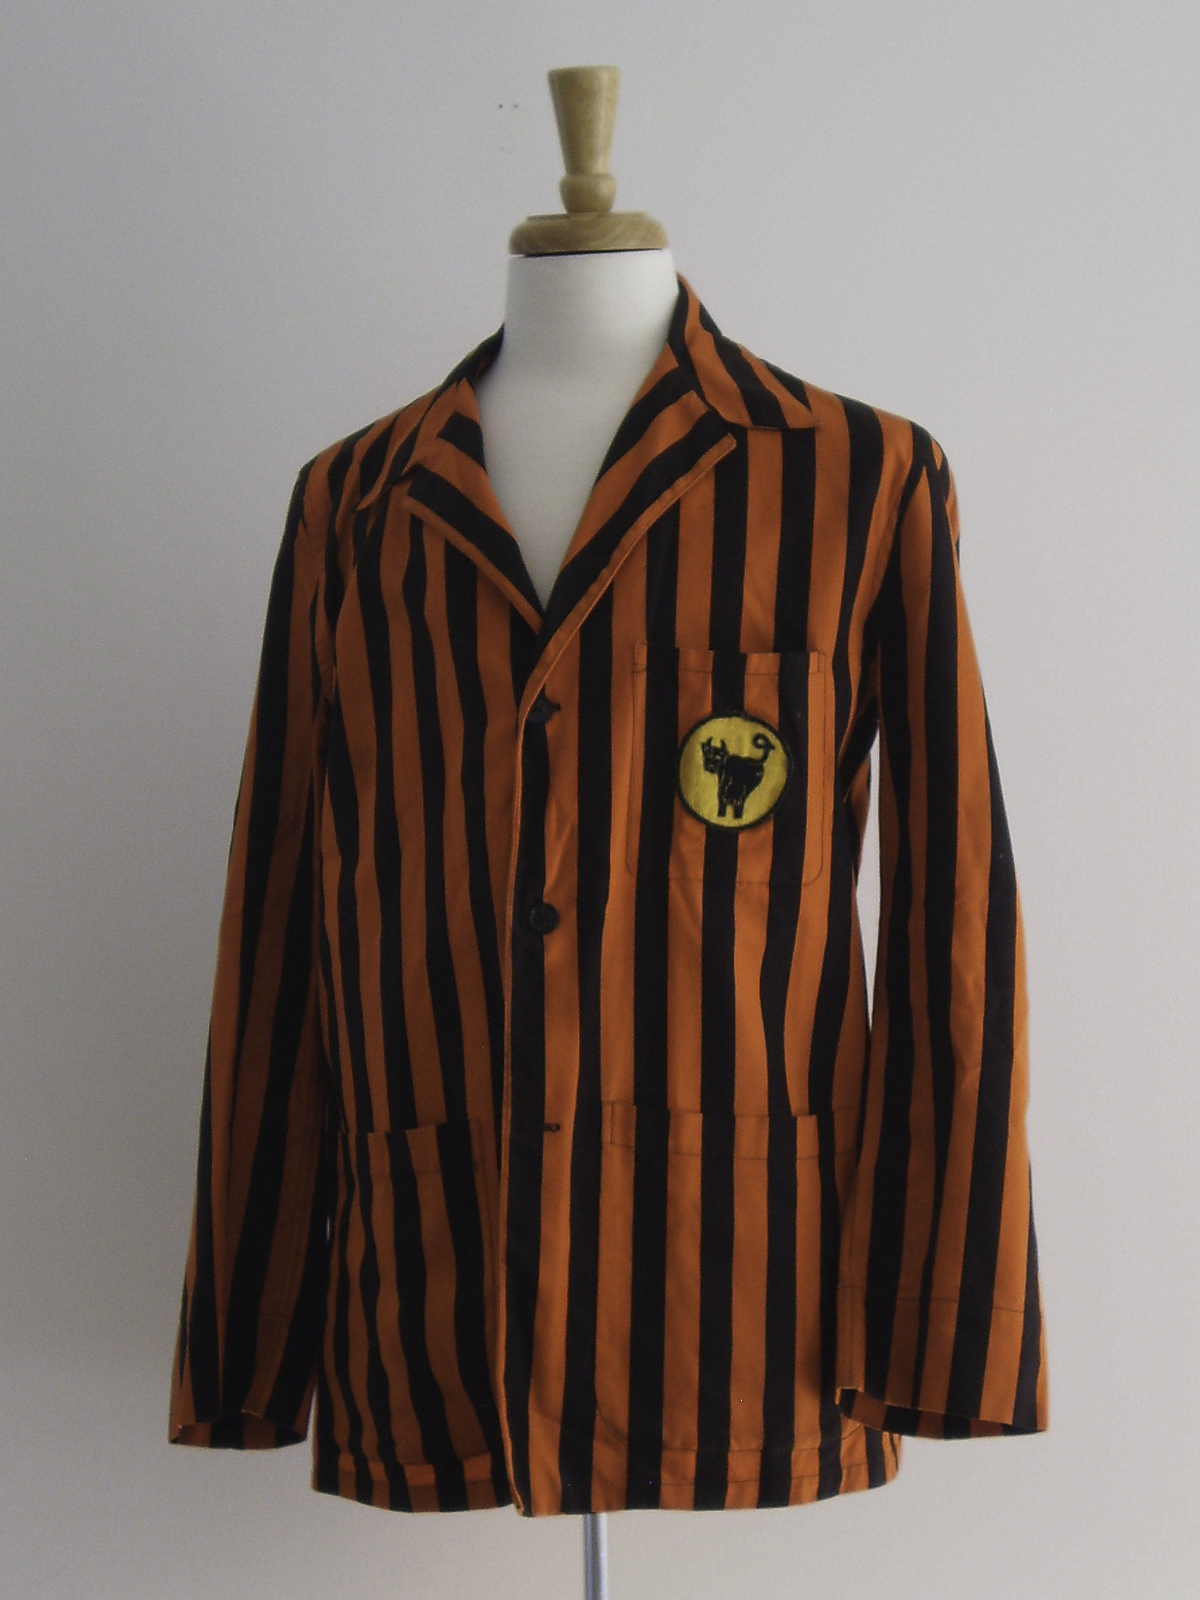 Reunion Jacket 1933 Variation II